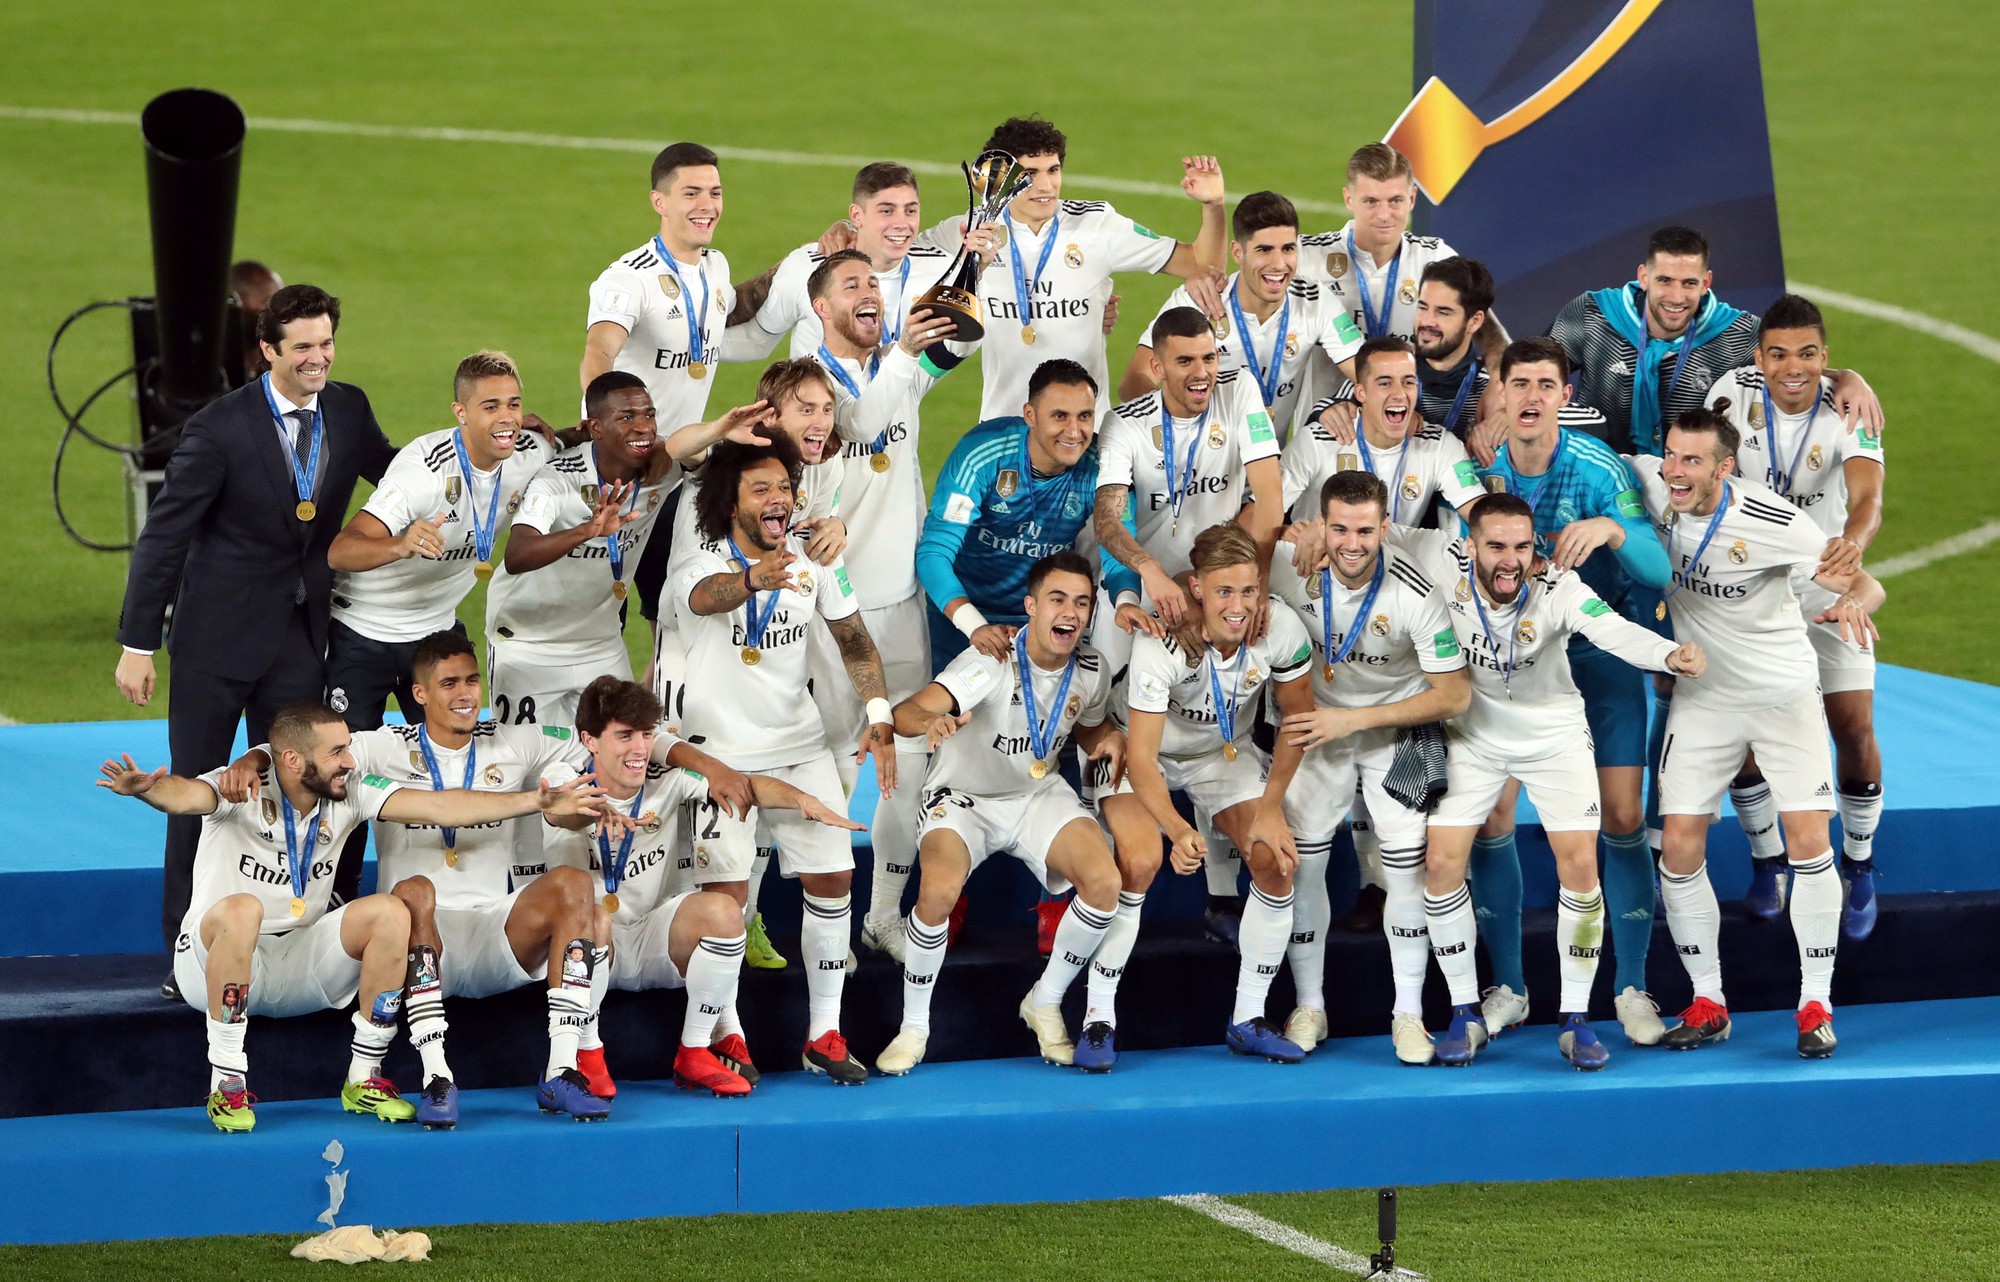 Real Madrid, đè bẹp, chủ nhà, hat-trick, World Cup: Hãy xem những hình ảnh đầy cảm hứng về chiến thắng ấn tượng của Real Madrid trước chủ nhà trong trận đấu tại World Cup. Với hat-trick từ Cristiano Ronaldo, đội bóng đã đè bẹp đối thủ và giành chiến thắng duyên dáng.